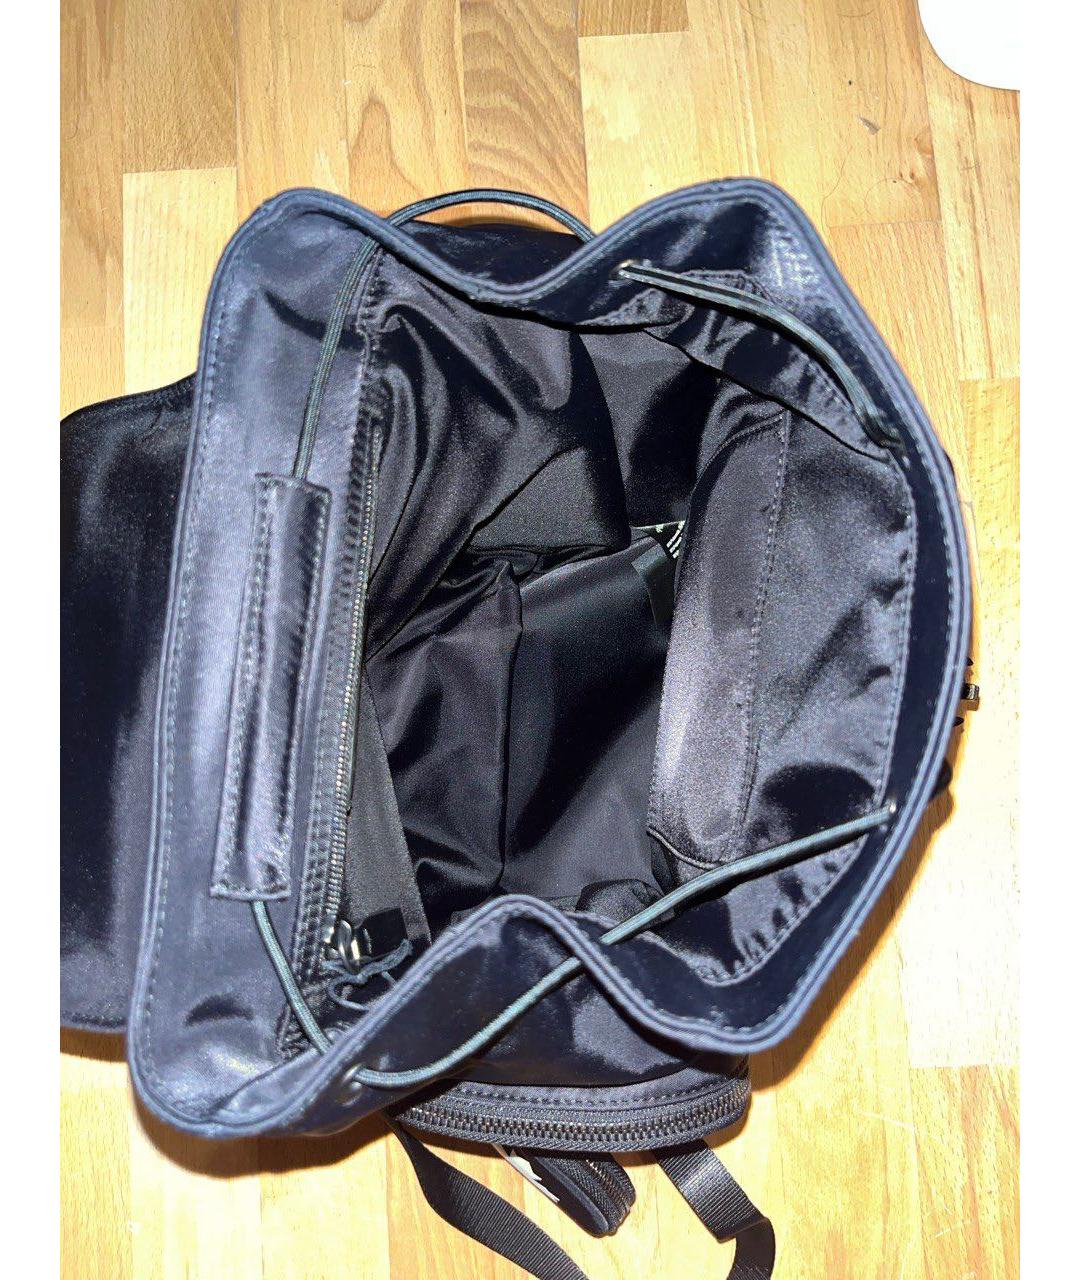 DSQUARED2 Черный рюкзак, фото 2